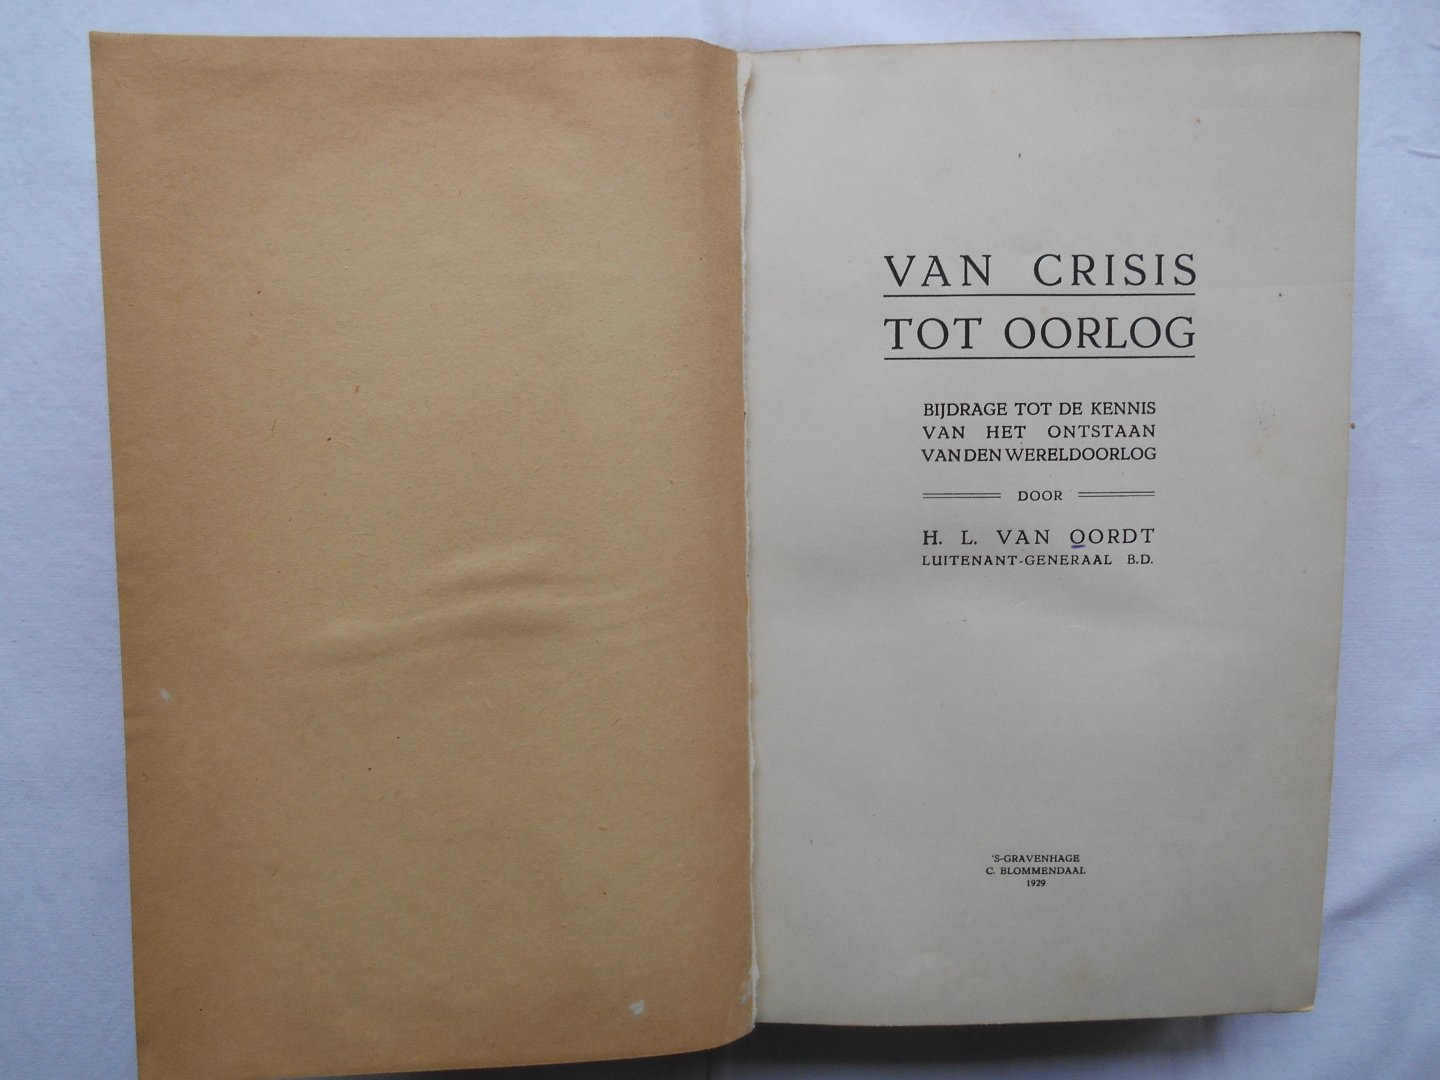 Oordt, H.L. van - Van crisis tot oorlog.